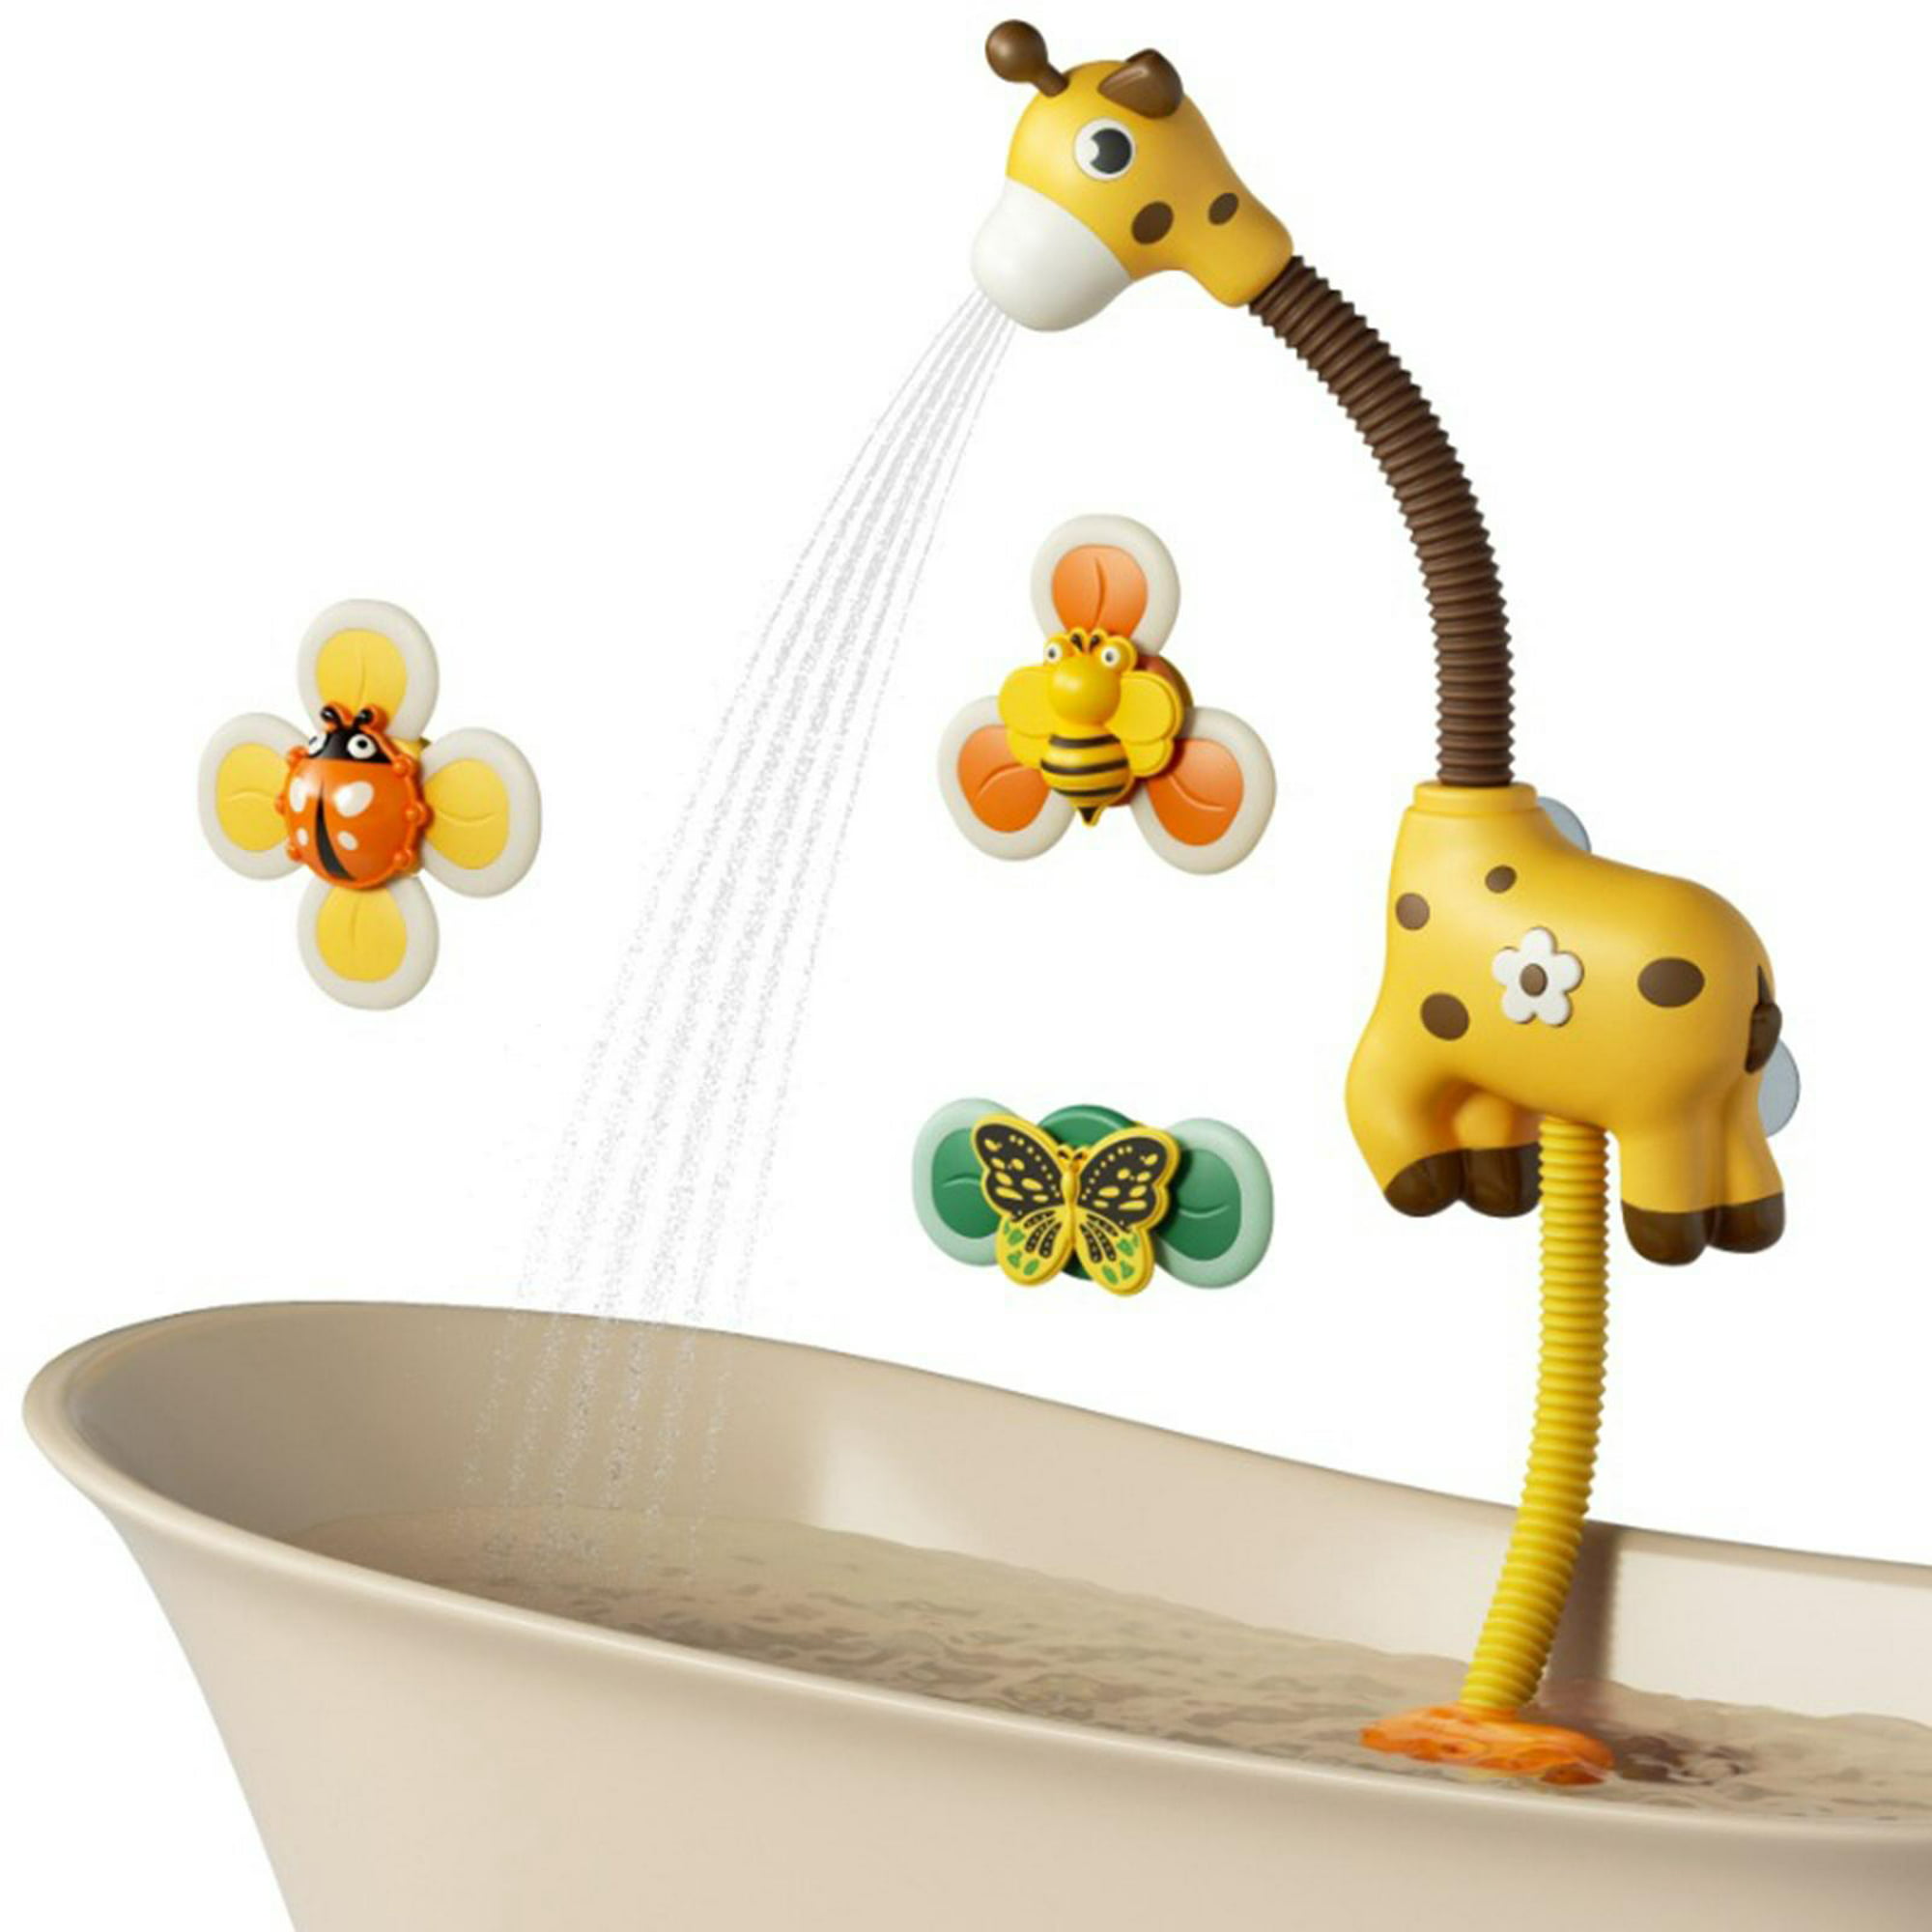  TUMAMA Juguete de bañera para bebé con cabezal de ducha y 3  juguetes giratorios de succión, grifo de ducha de chorro de agua de jirafa  y bomba de agua, esenciales de